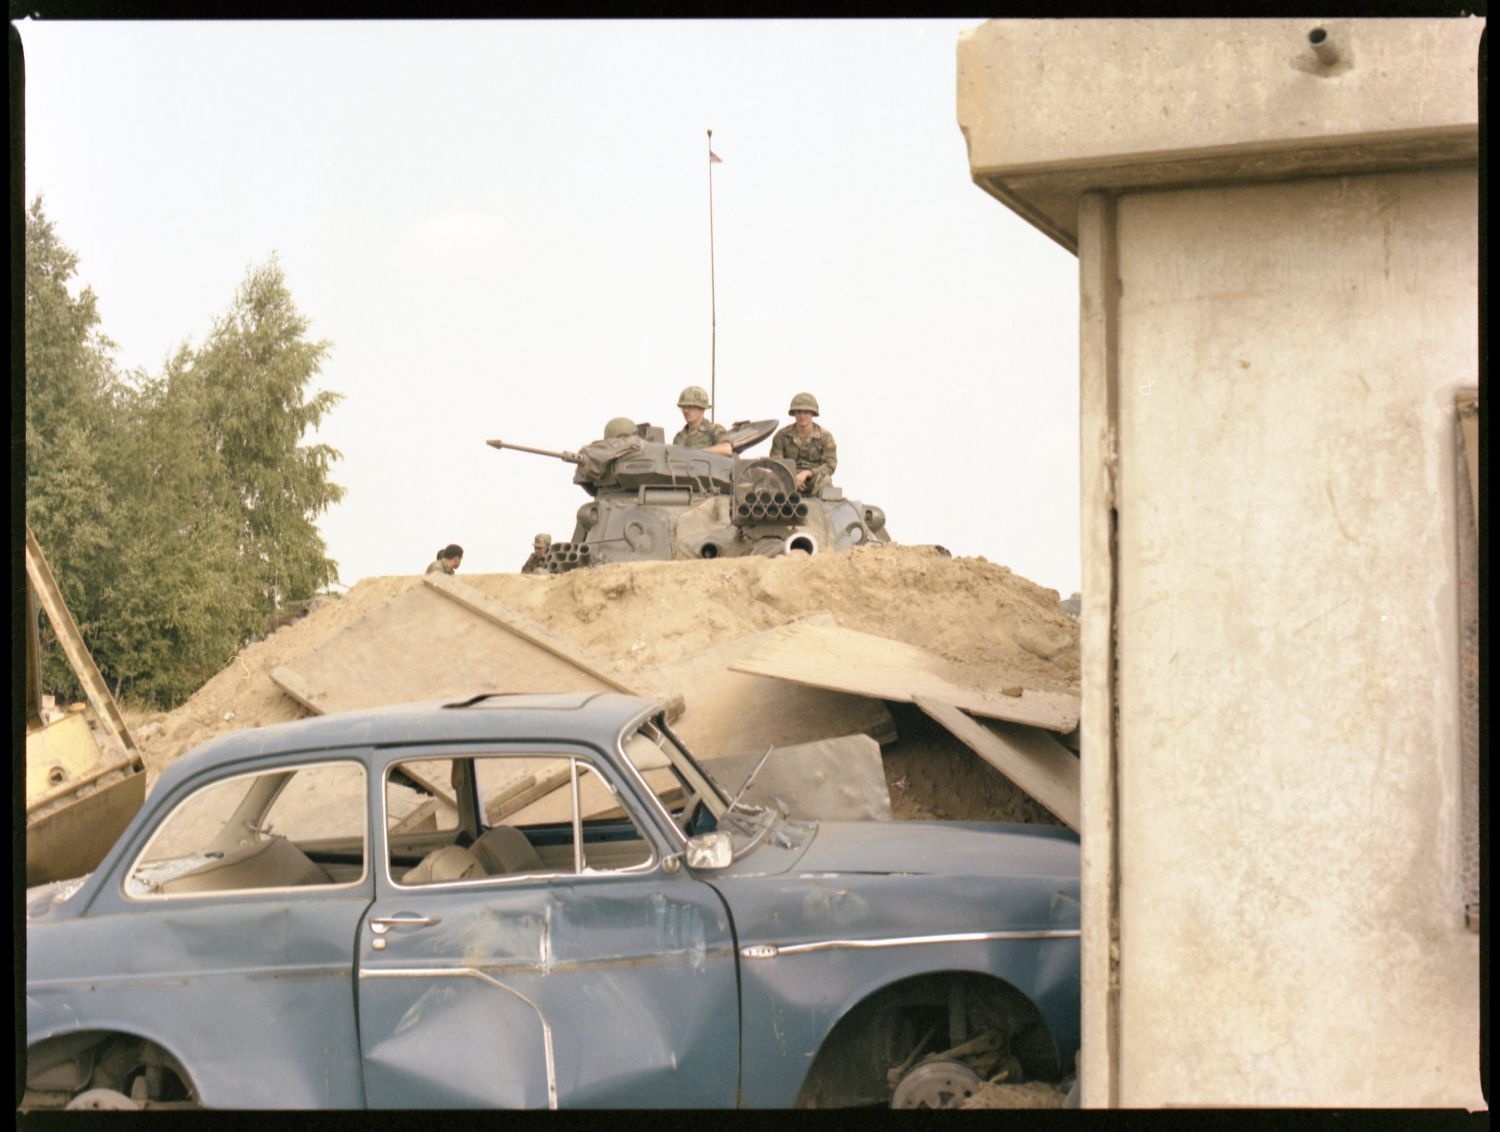 Fotografie: Häuserkampfübung der U.S. Army Berlin Brigade in Parks Range in Berlin-Lichterfelde